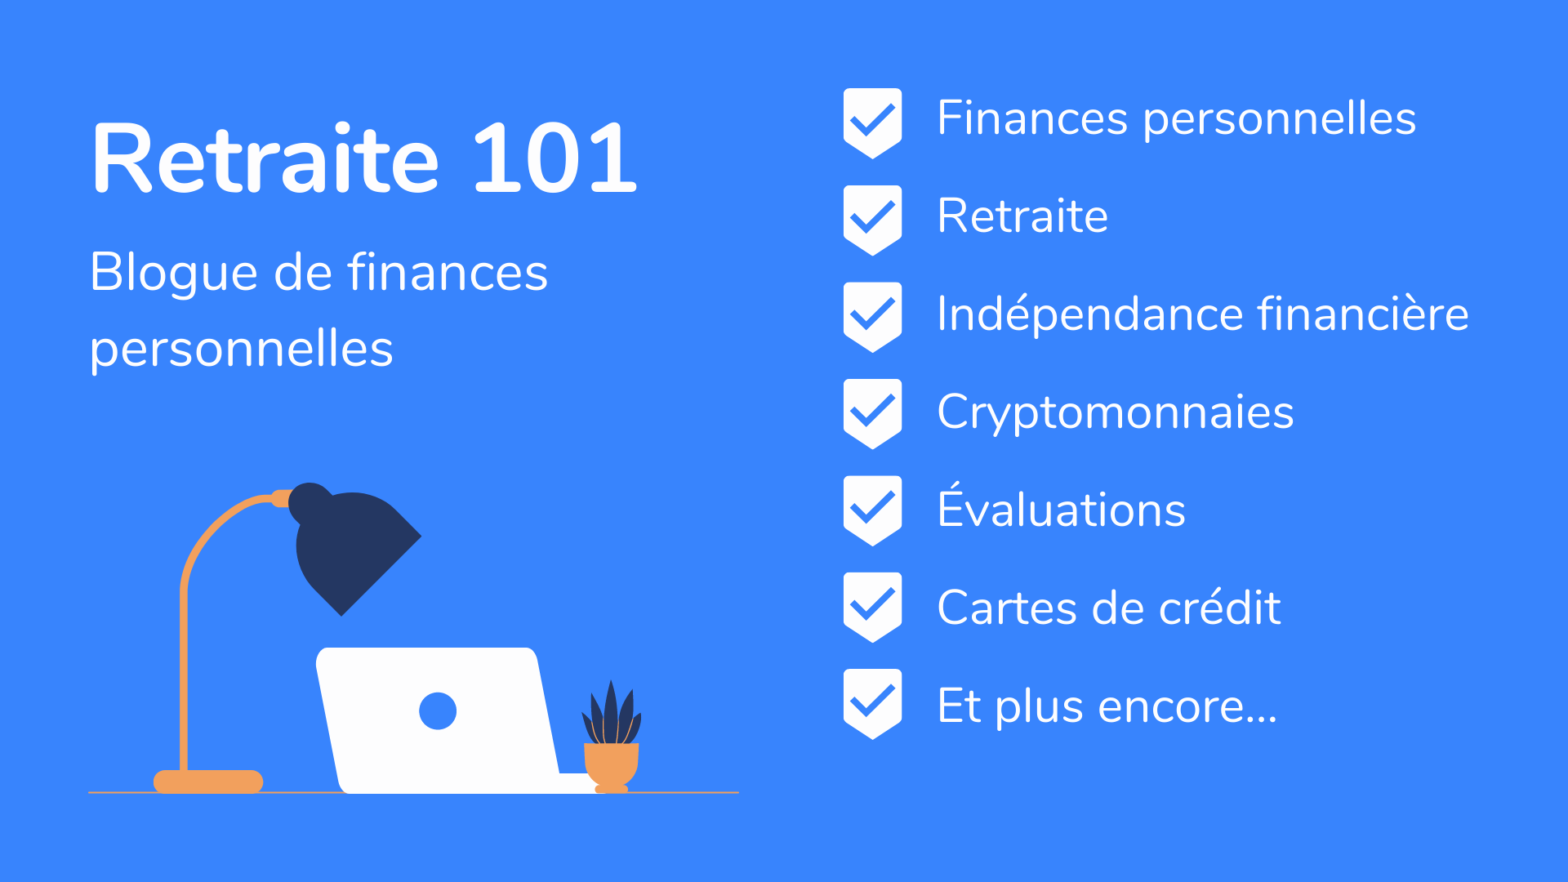 Bienvenue sur Retraite 101 - Blogue de finances personnelles